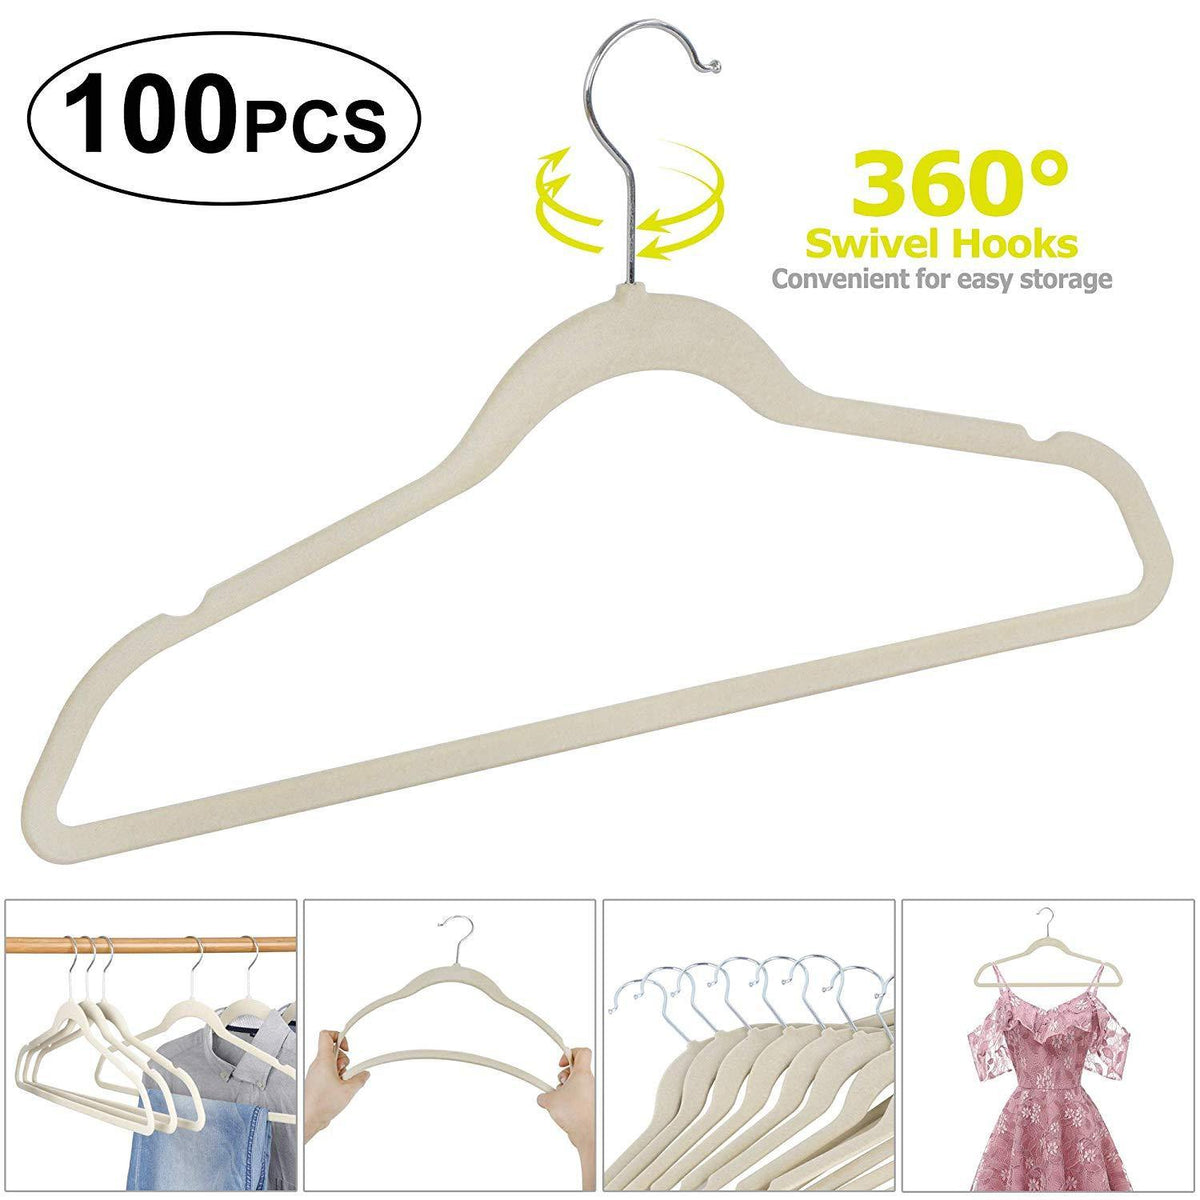 Non Slip Velvet Hangers - 100 Pack Clothes Hanger Hook Swivel 360